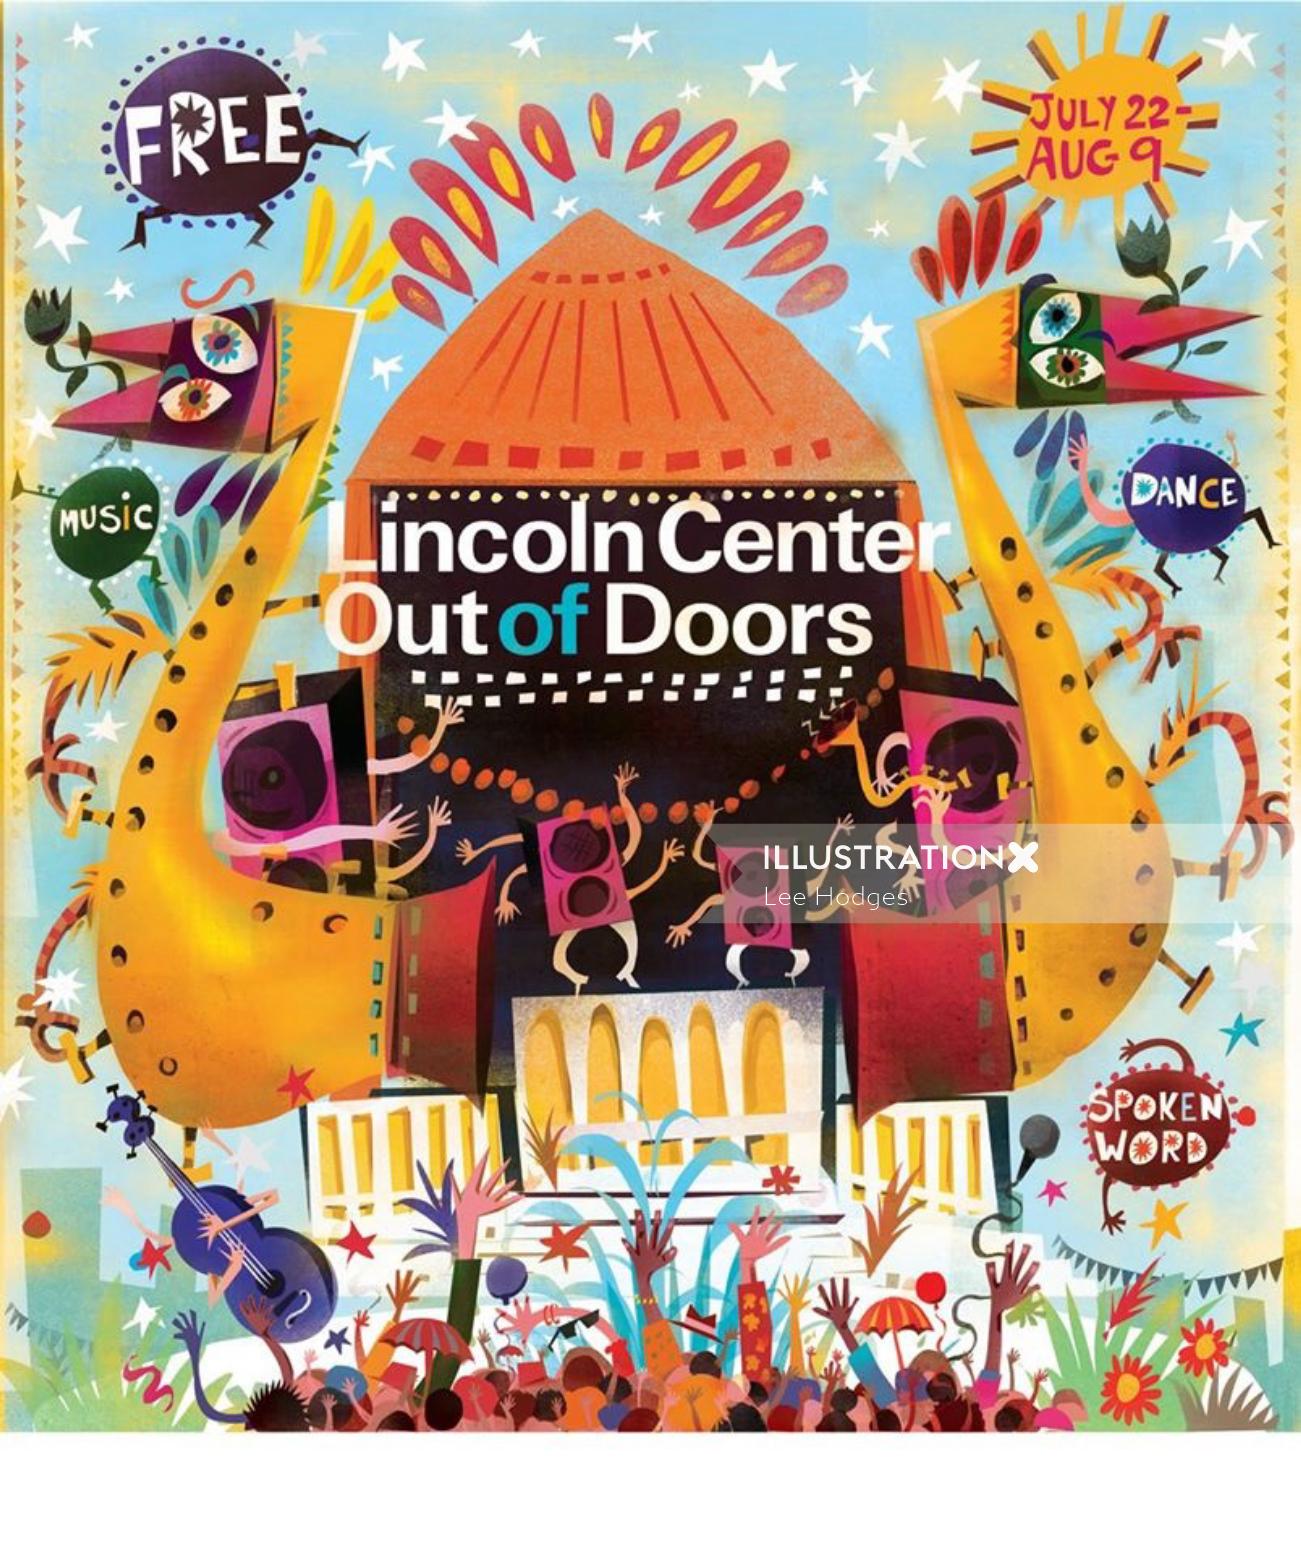 Festival de musique gratuit en plein air de Lincoln